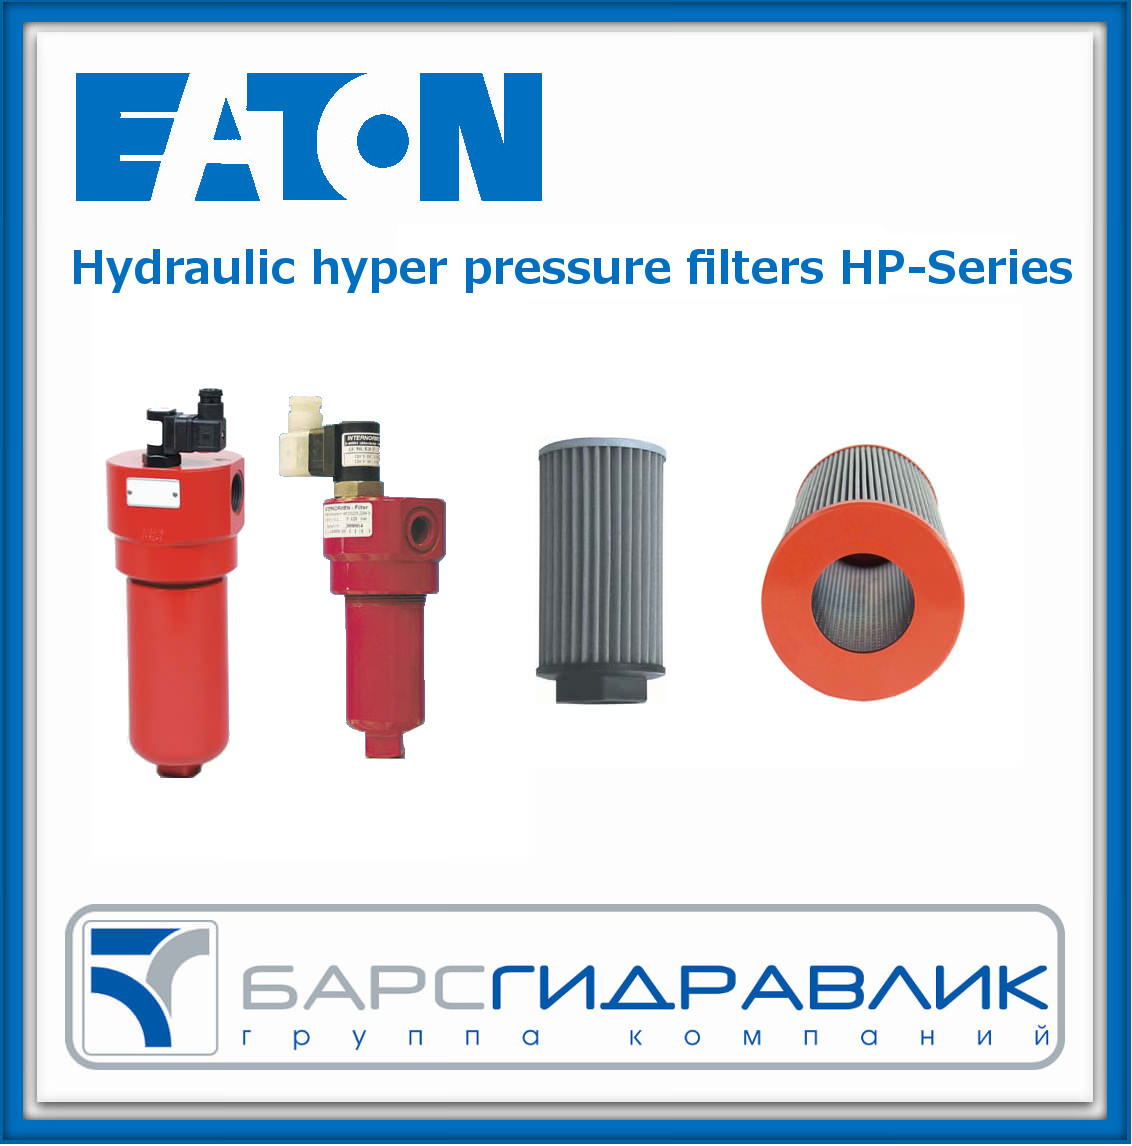 Линейка гидрофильтров высокого давления HP- Series от EATON